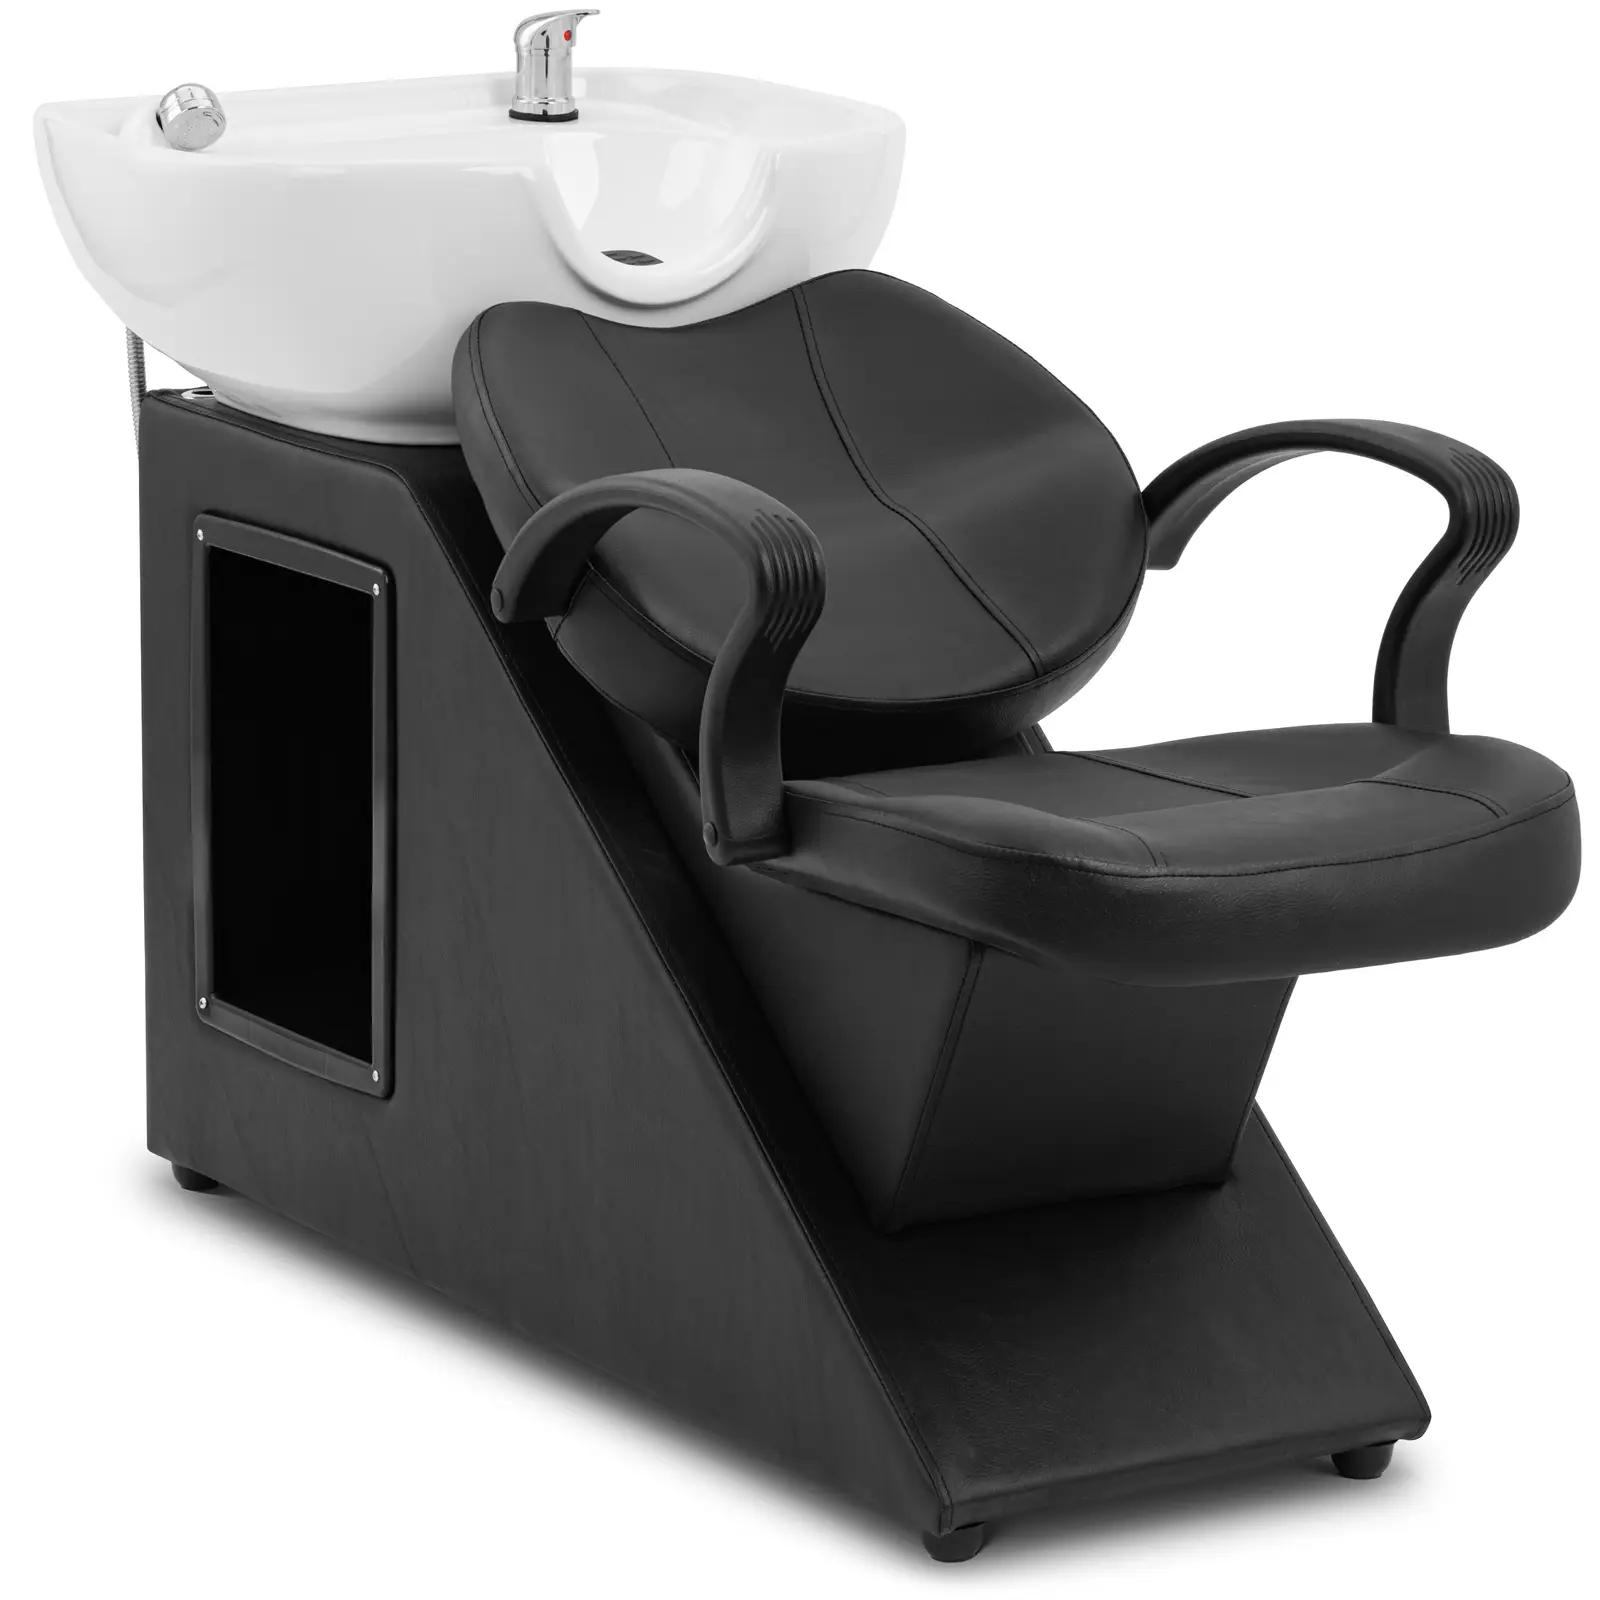 Friseur-Waschbecken mit Sessel - Maße Becken 600 x 450 x 150 mm - Schwarz/Weiß